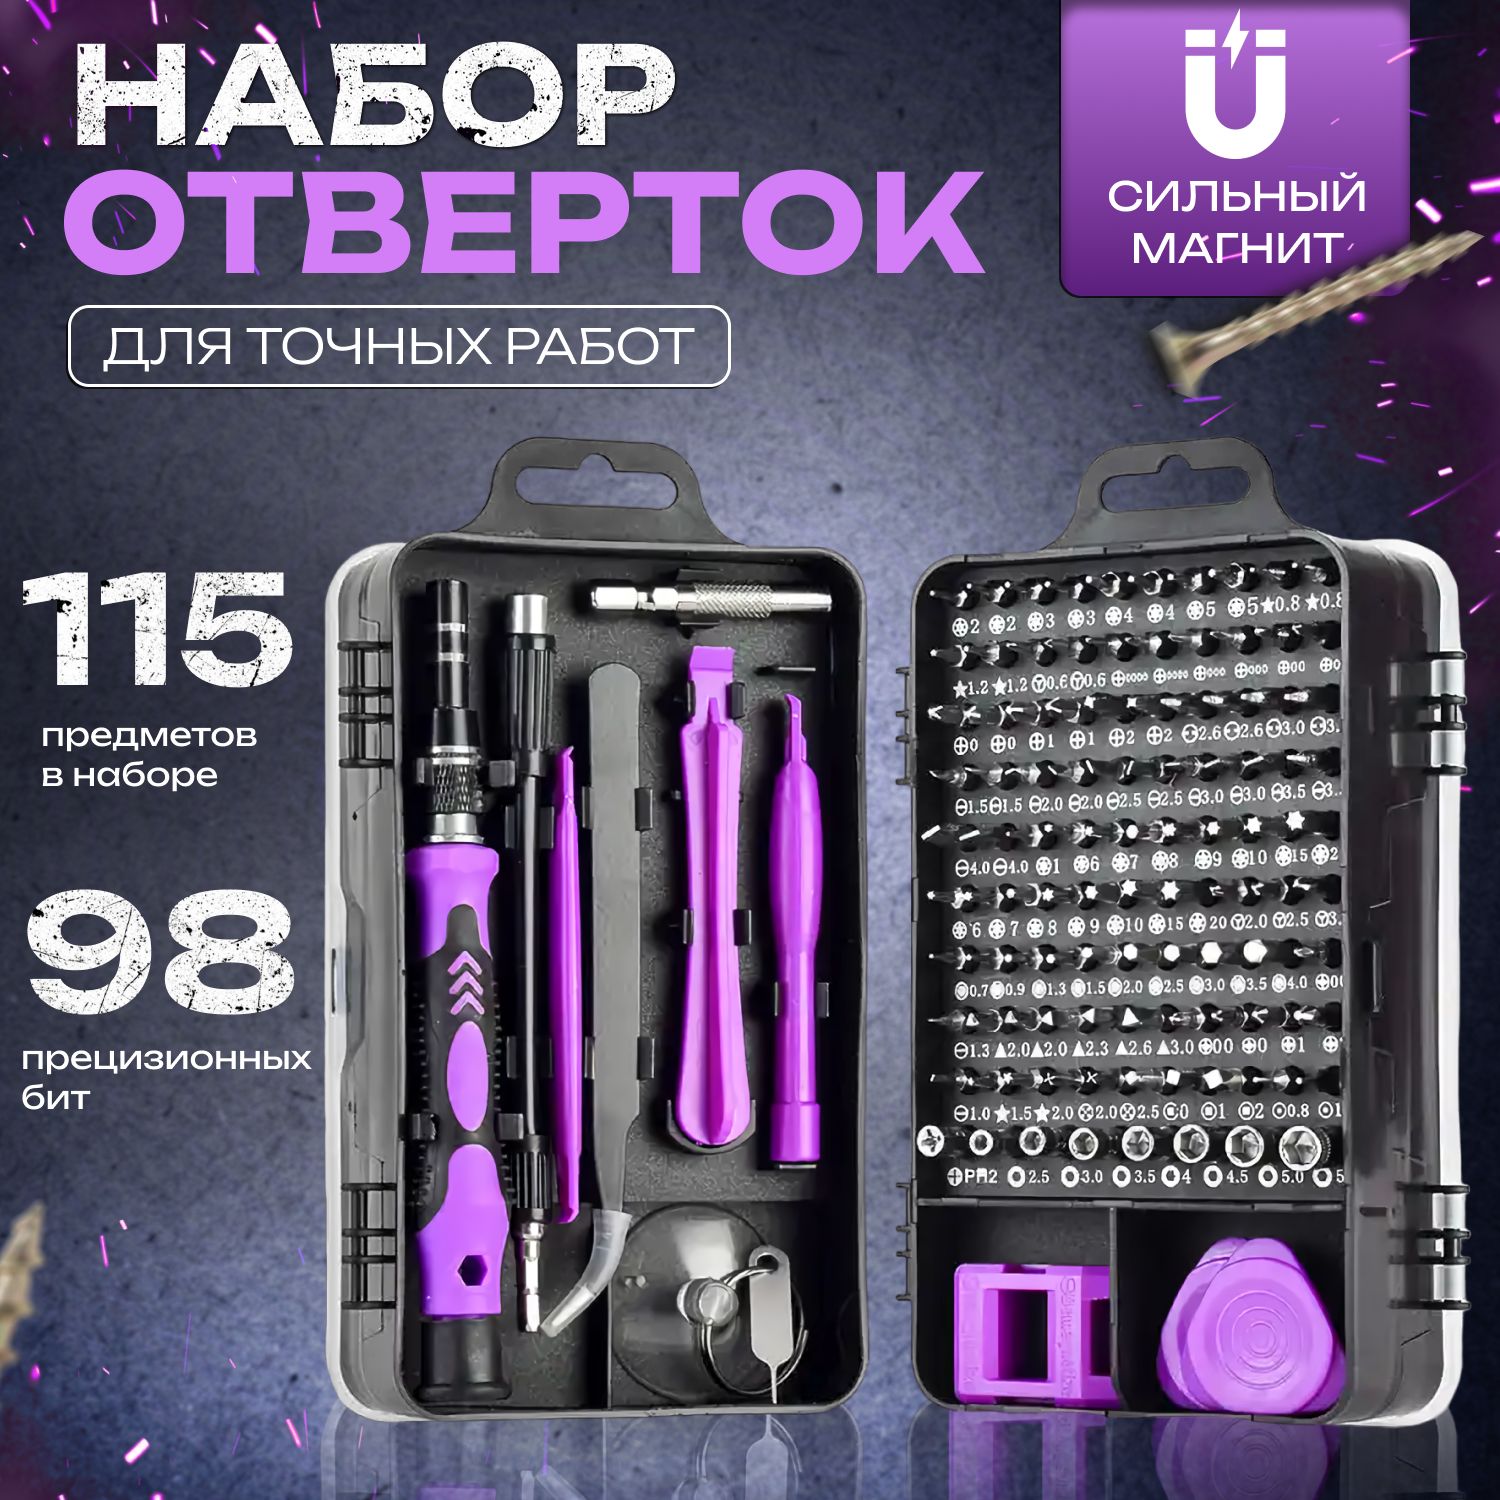 Наборотвертокибит115в1/многофункциональныйинструментдляточныхработ,фиолетовый